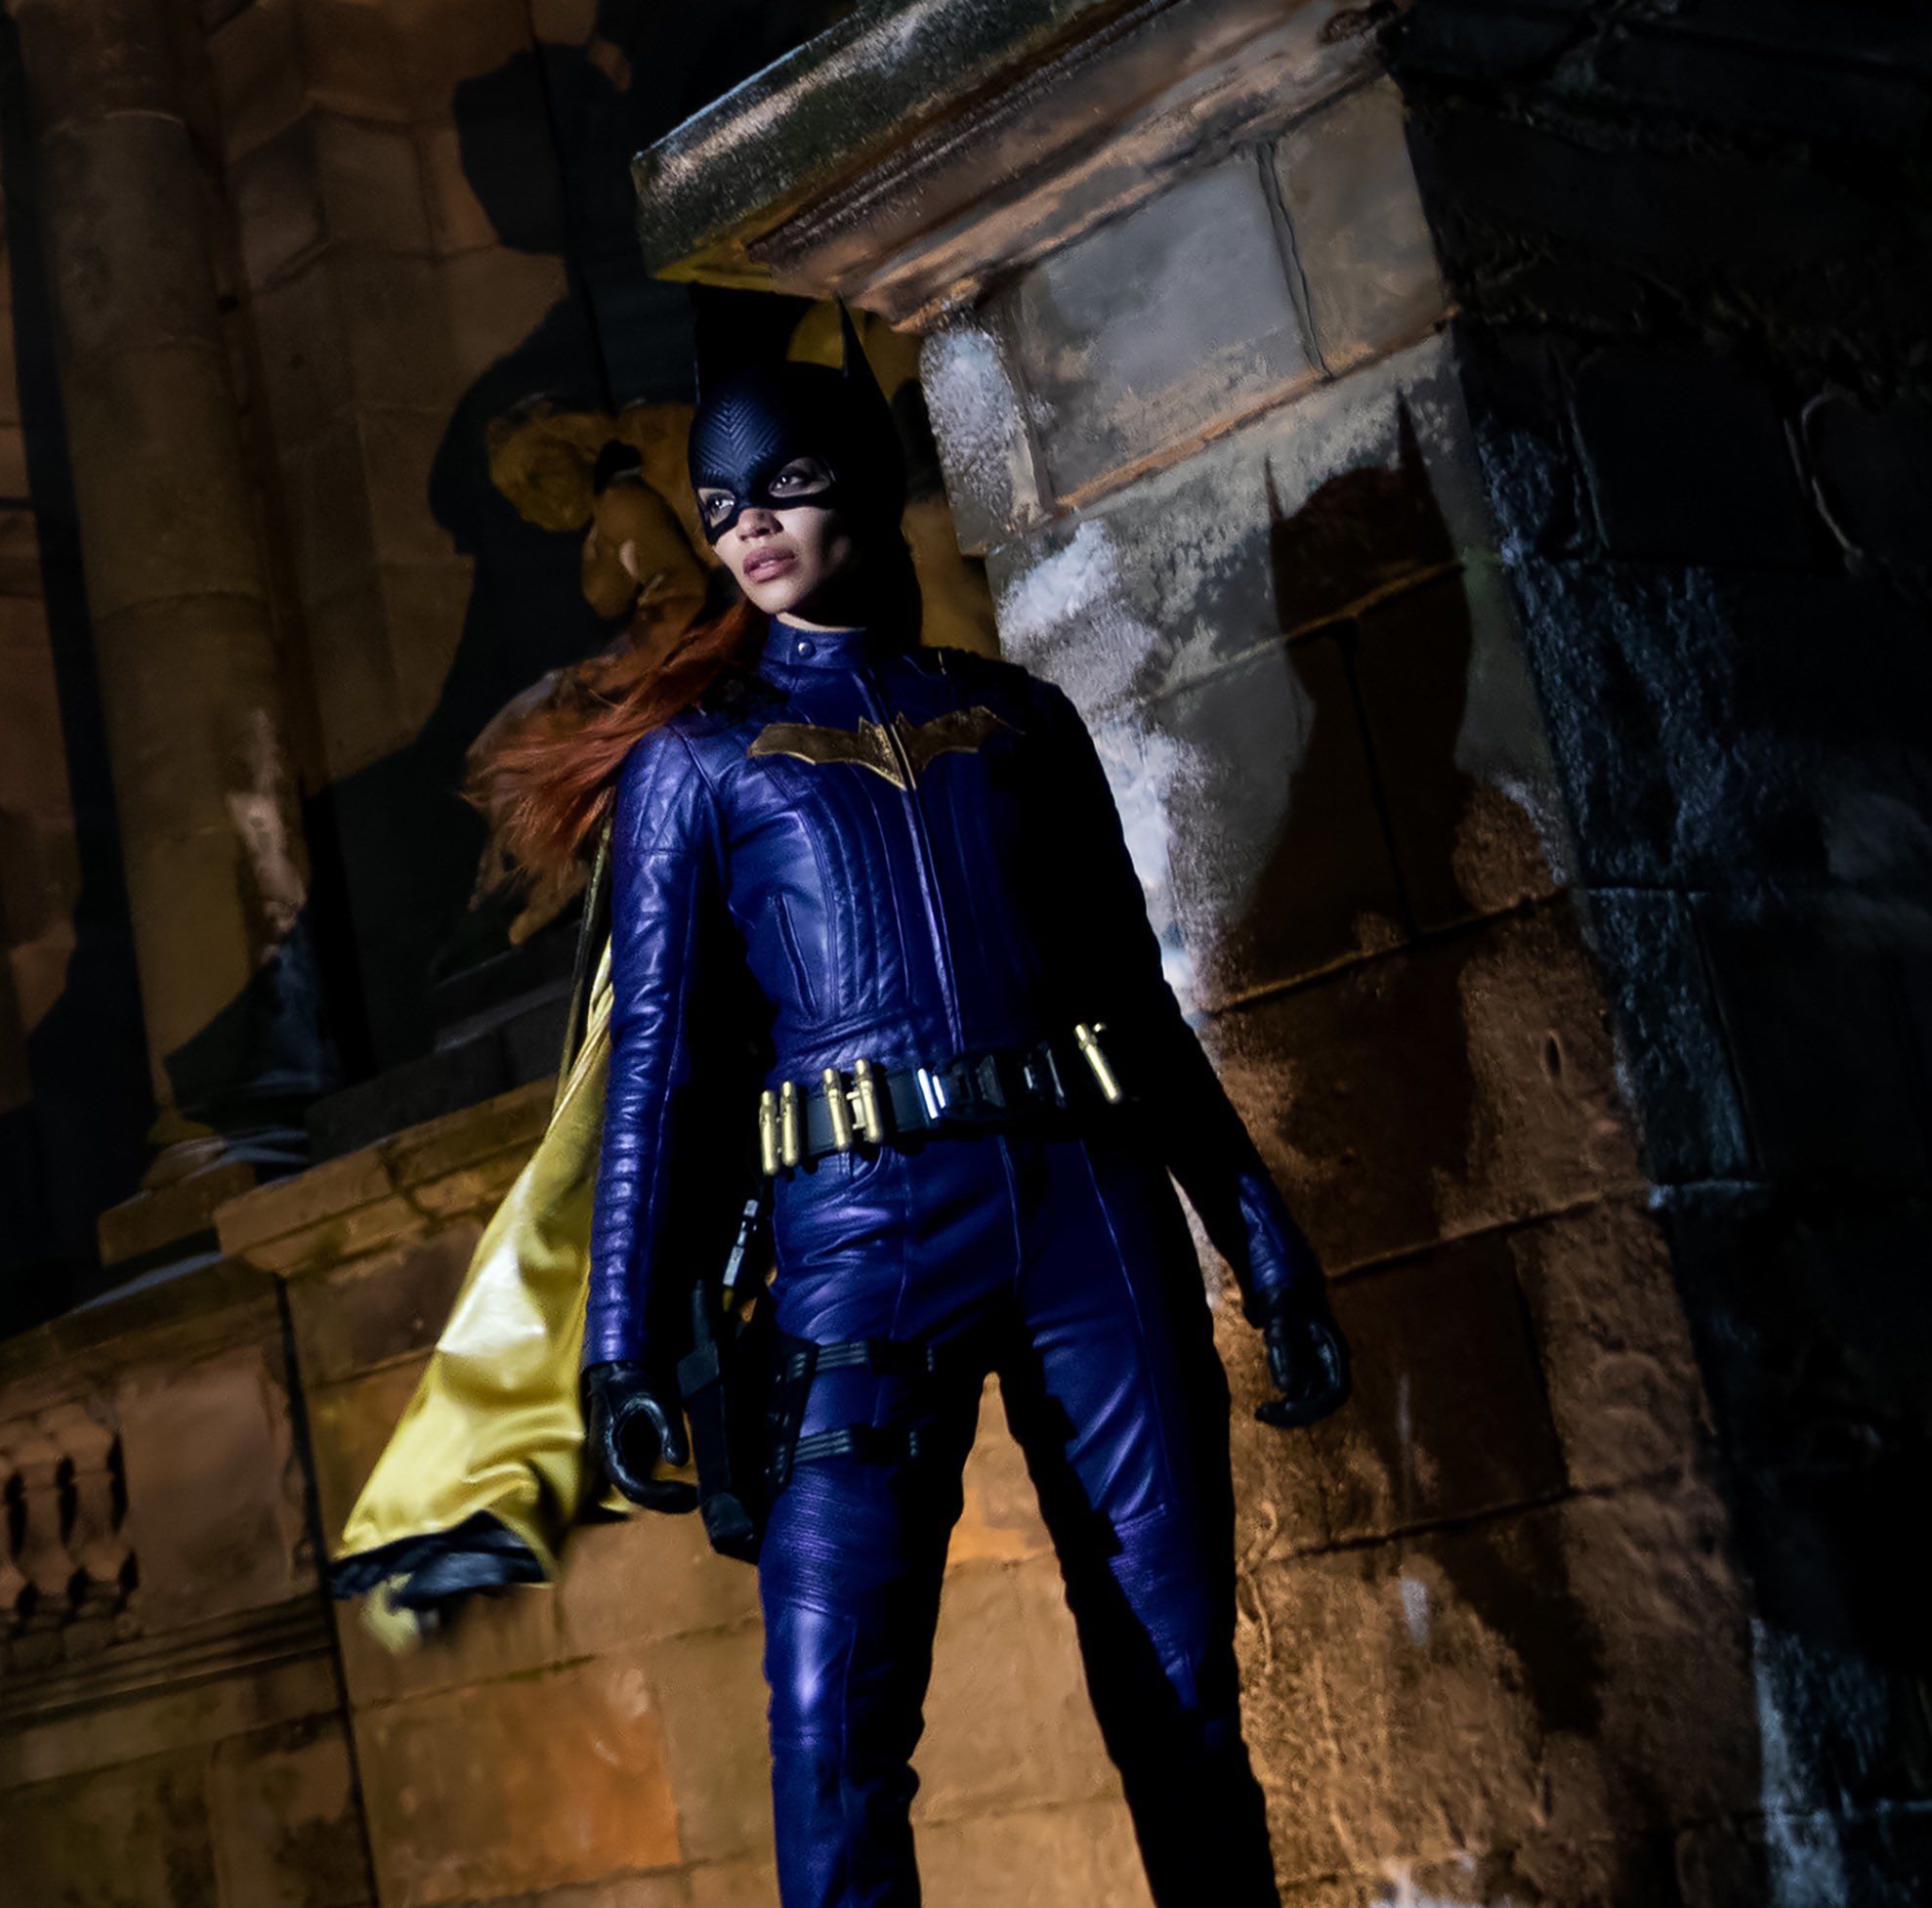 Batgirl filminden kostümlü bir görseli yayınlandı